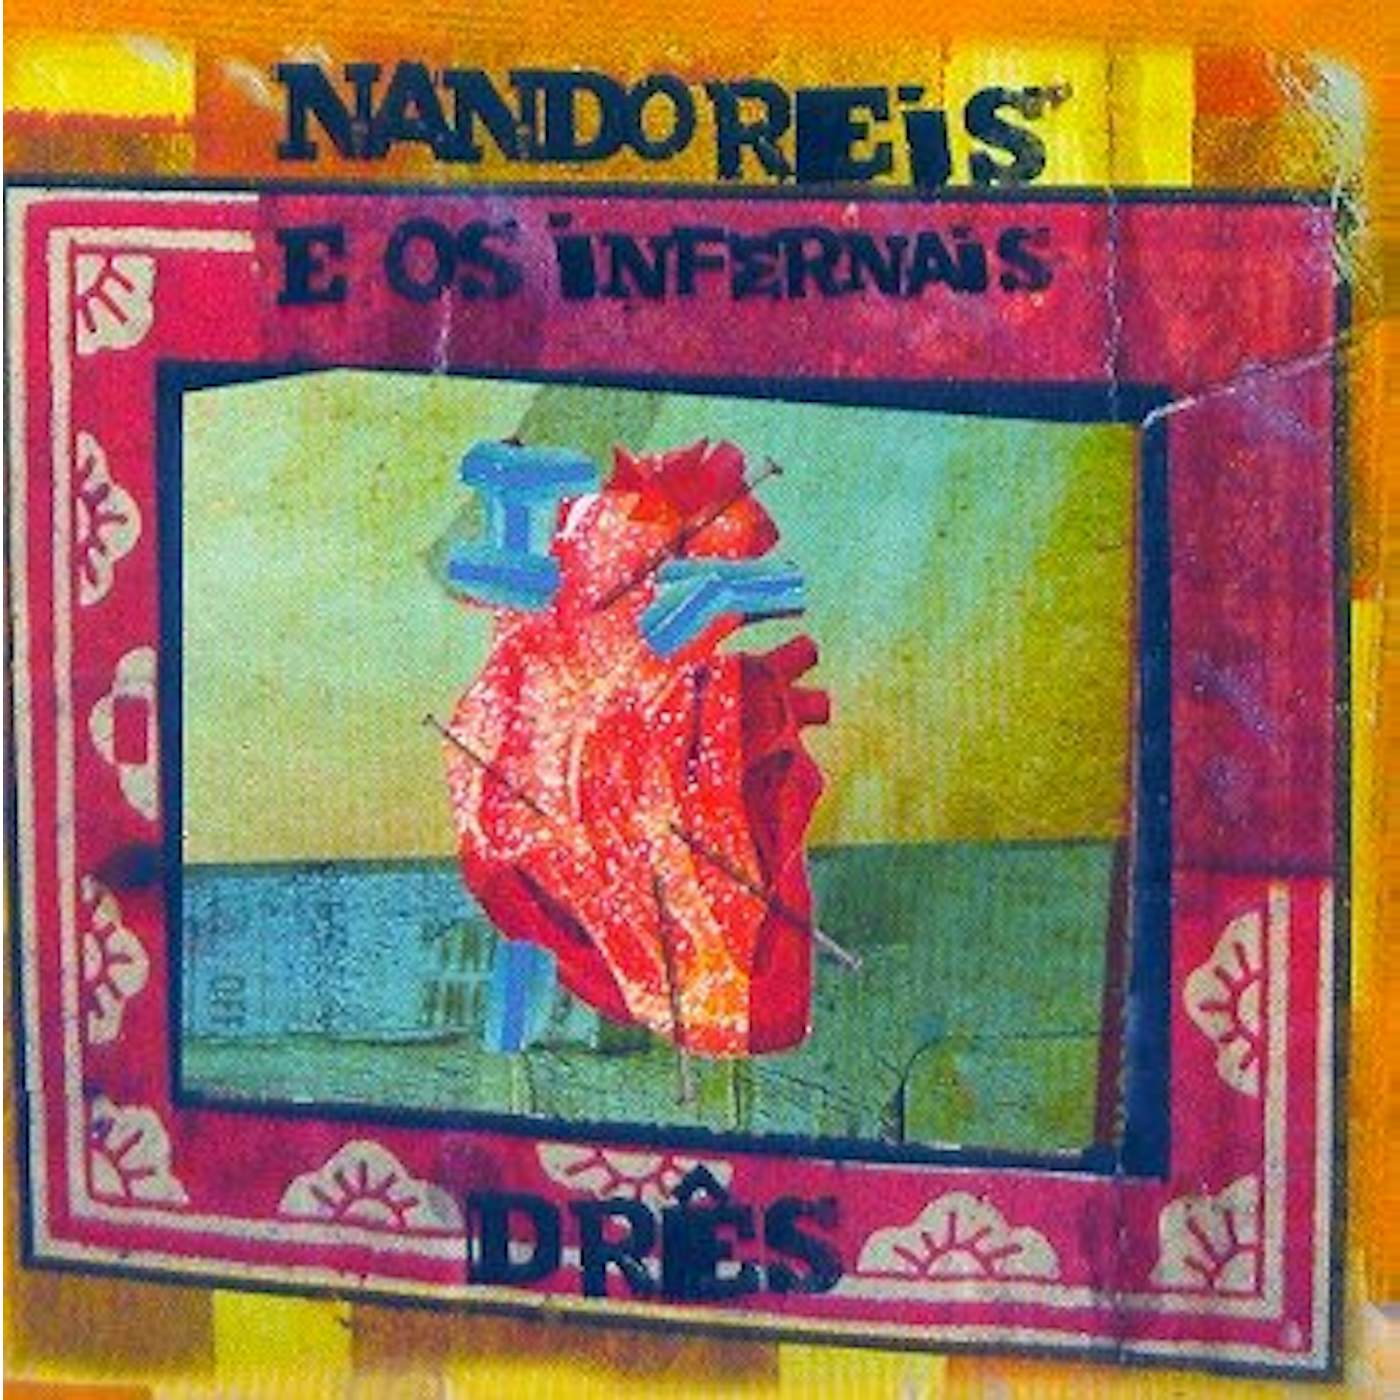 Nando Reis DRES CD